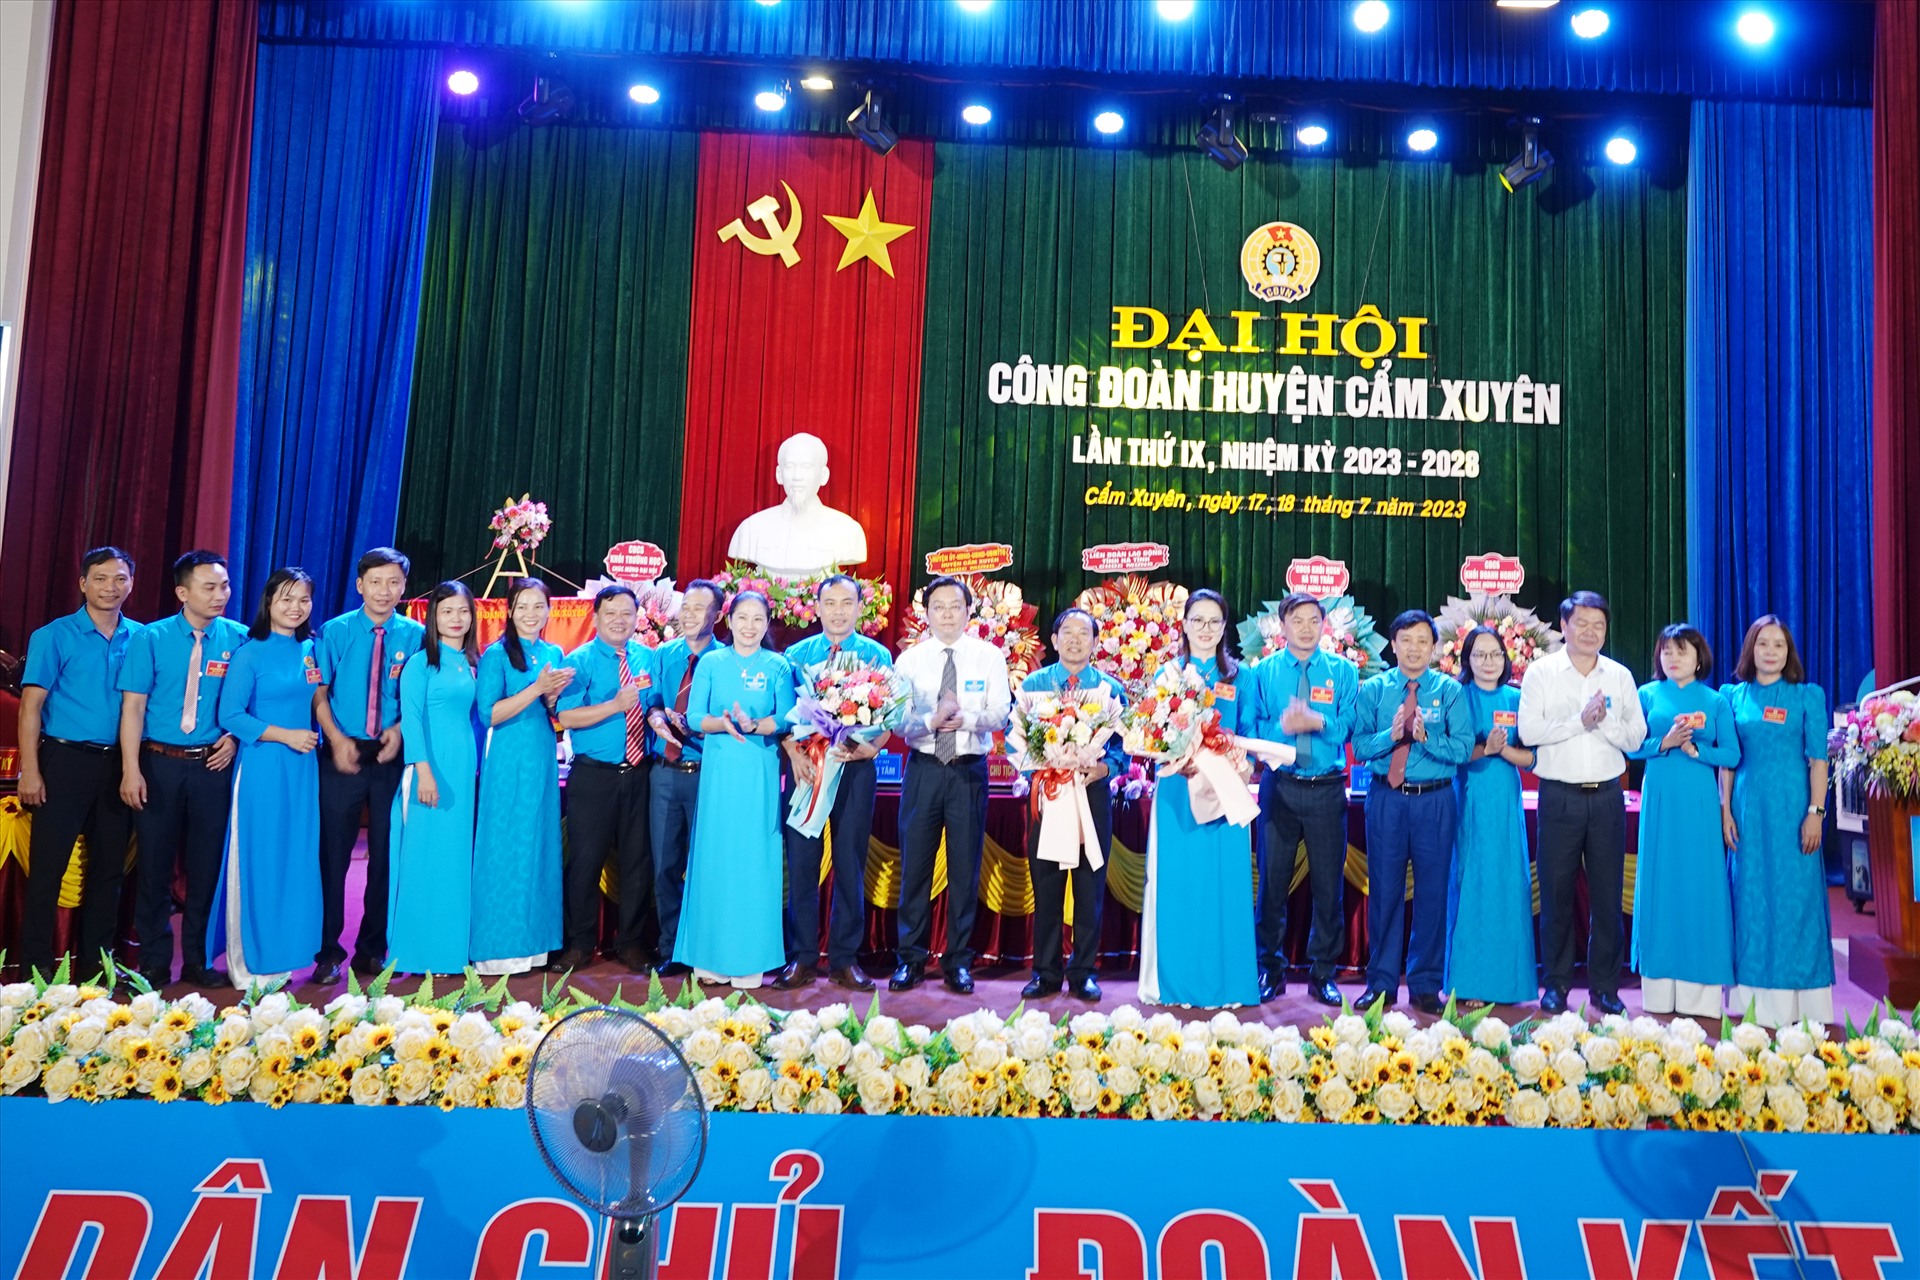 Ra mắt Ban Chấp hành Công đoàn huyện Cẩm Xuyên nhiệm kỳ 2023 - 2028. Ảnh: Trần Tuấn.